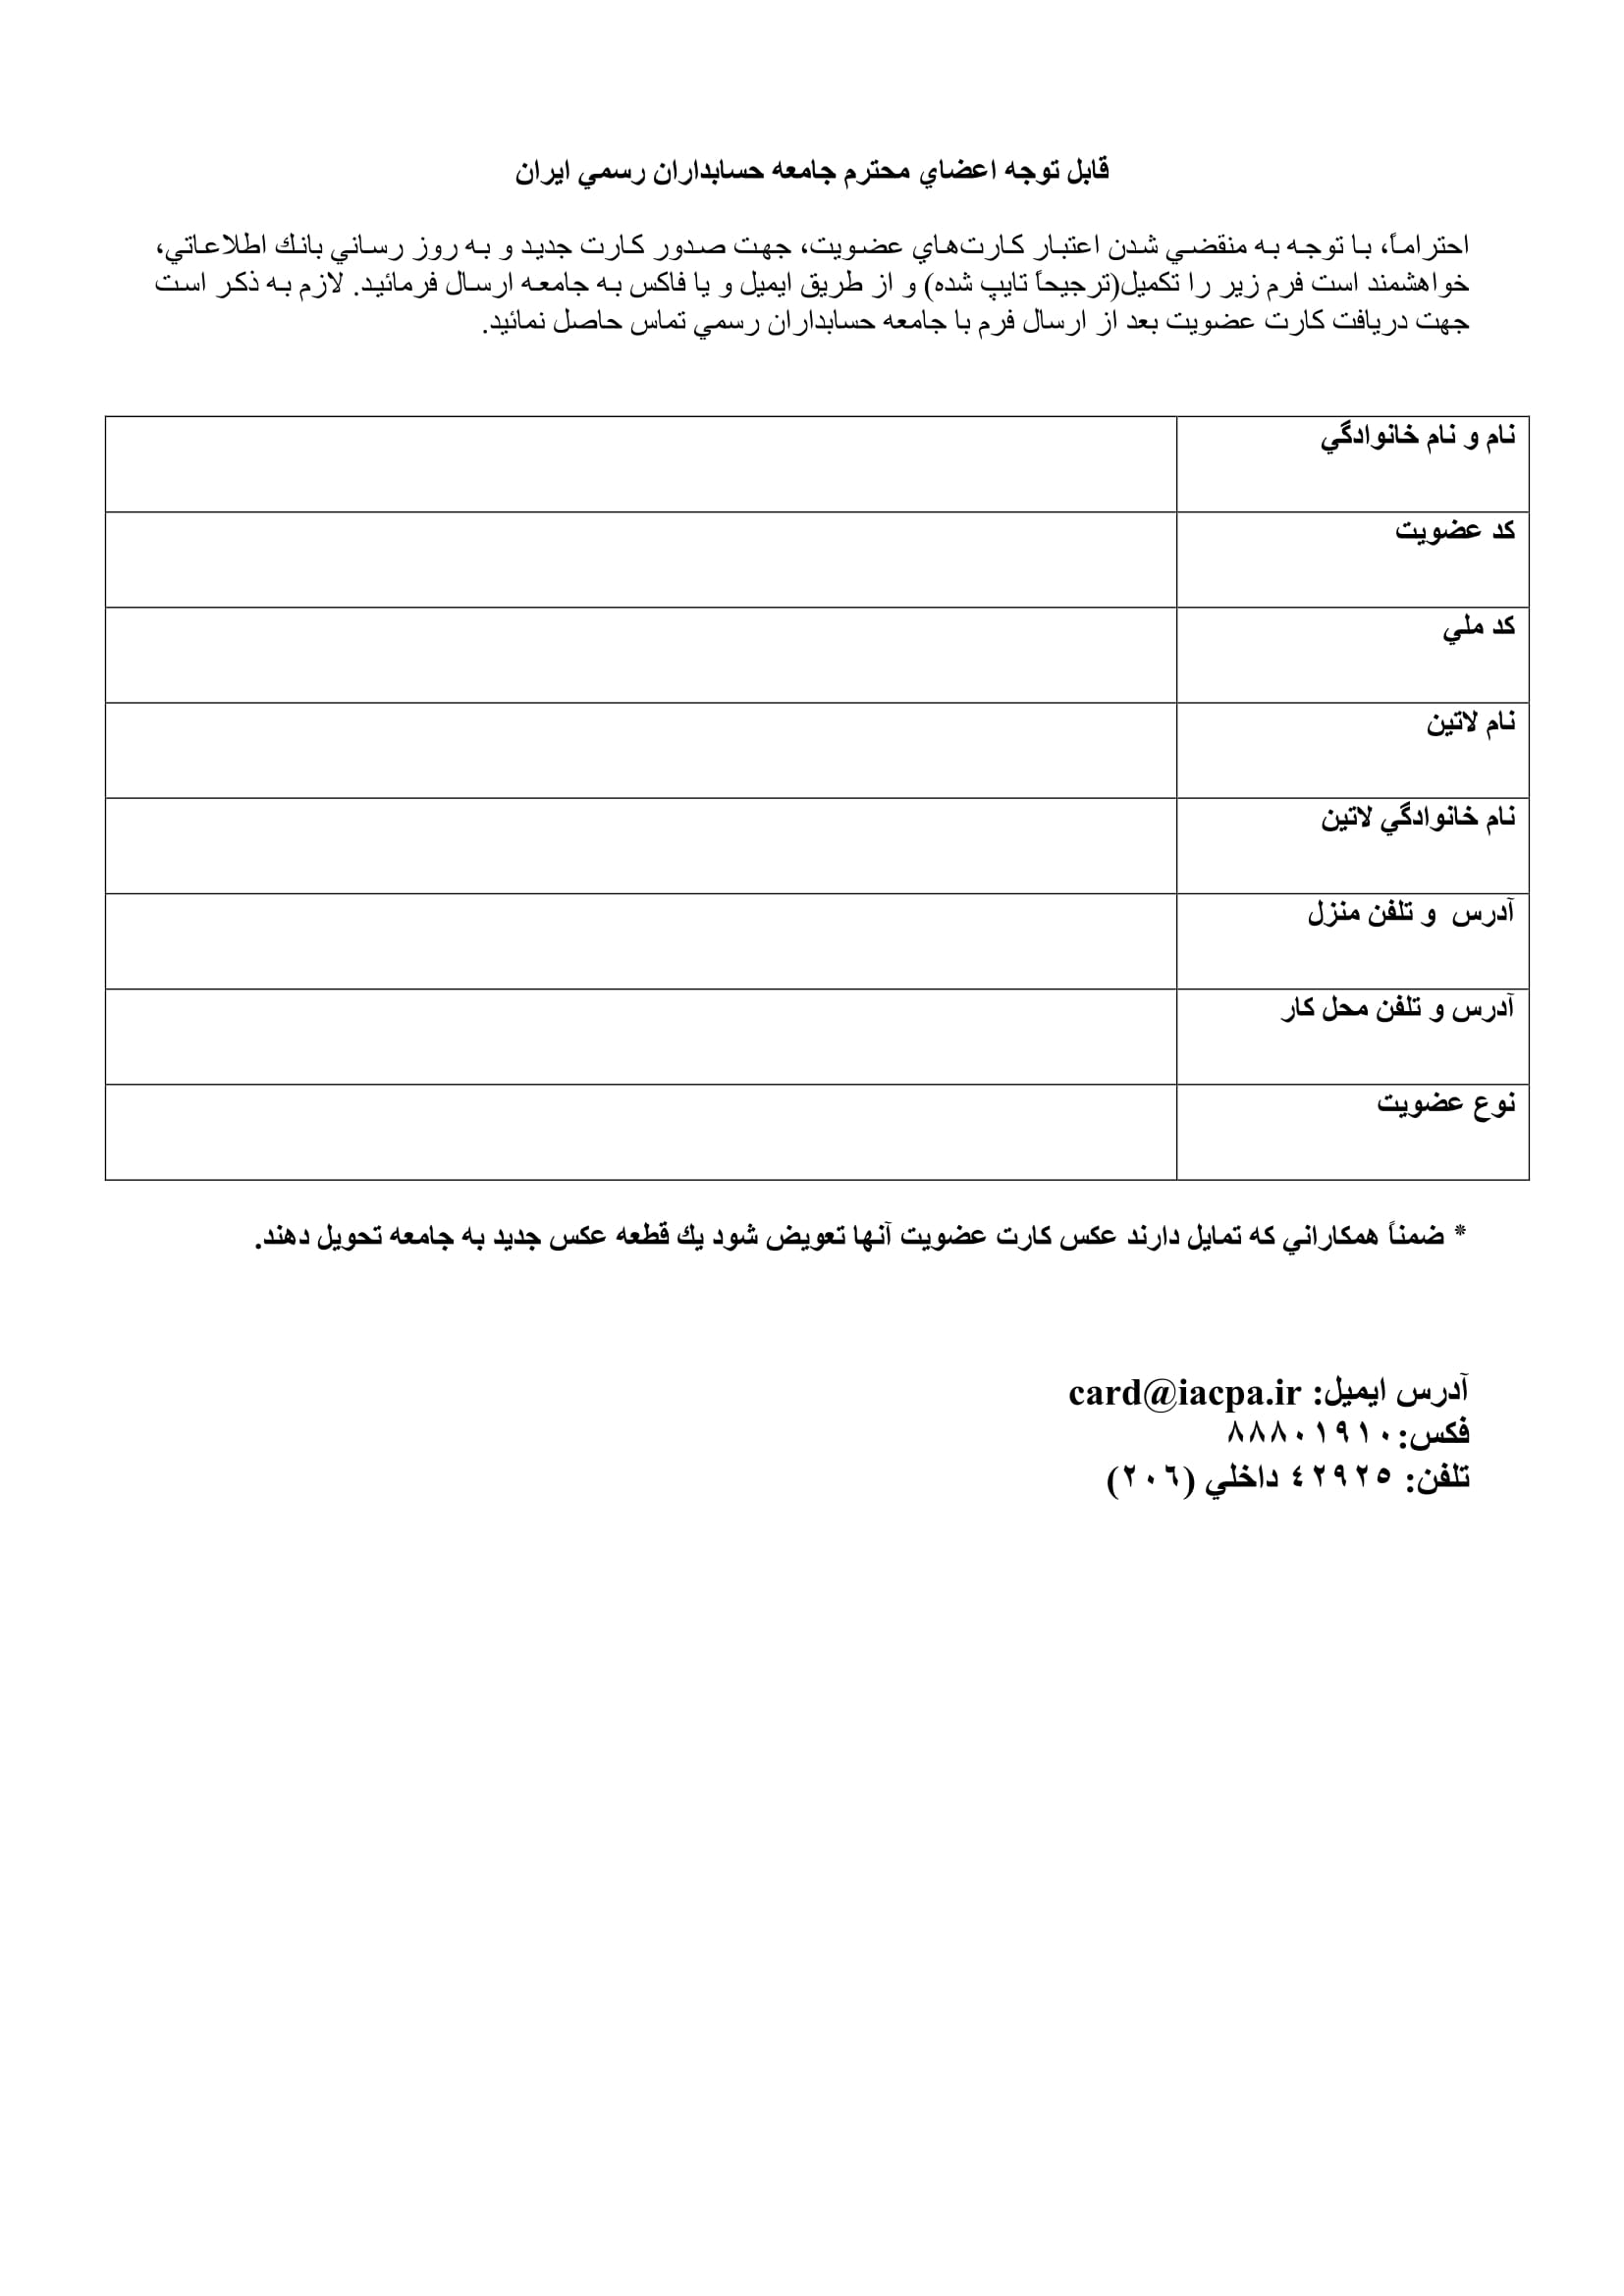 فرم درخواست عضویت در جامعه حسابداران رسمی ایران